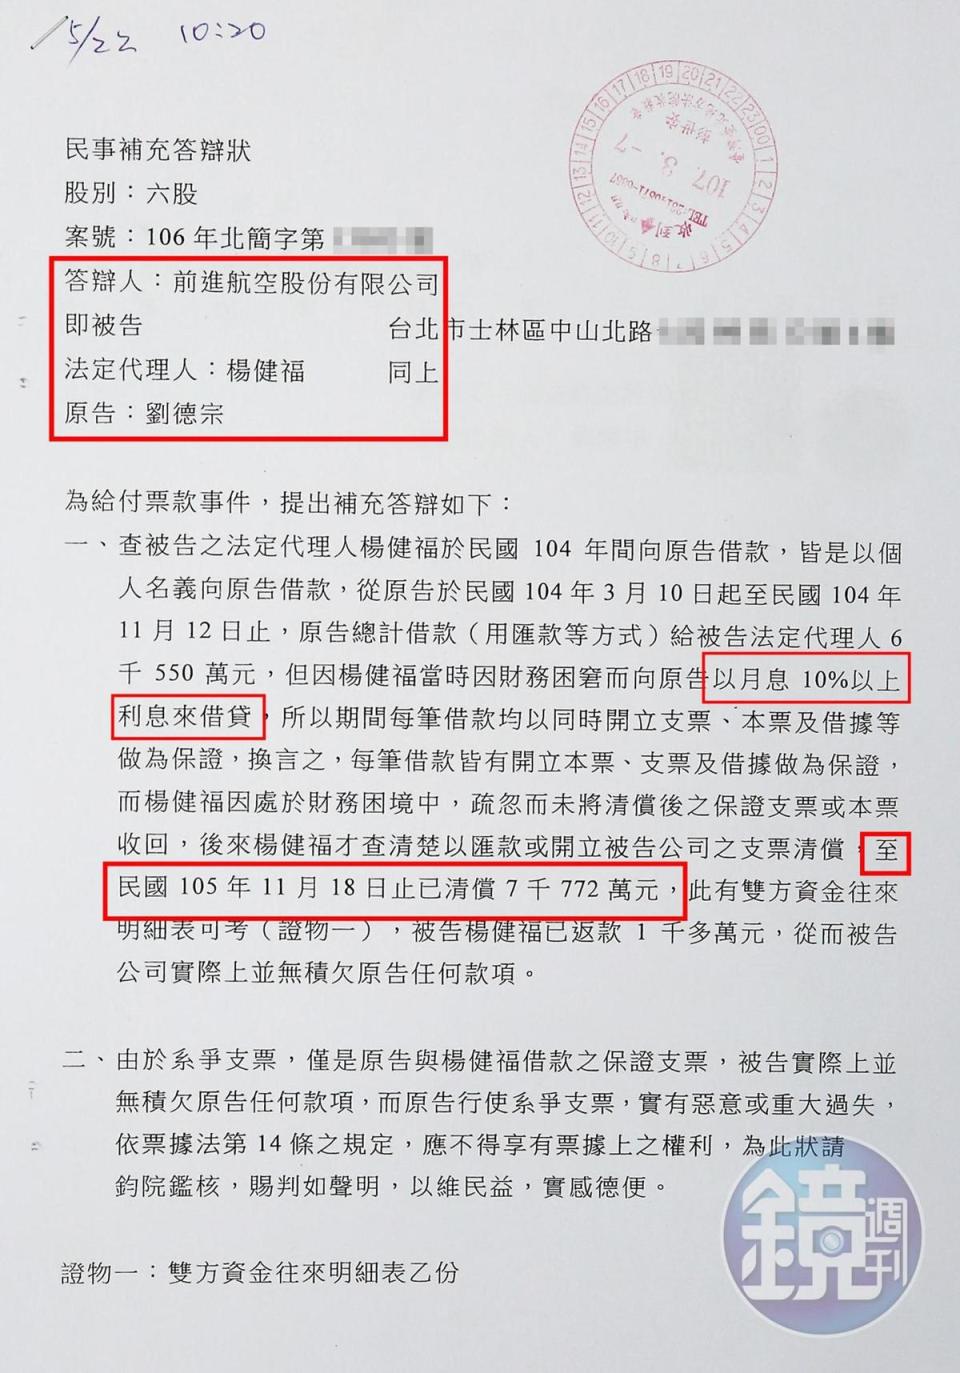 前進航空前董座楊健福，向本刊出示他與行政院政策顧問劉德宗訴訟的民事補充答辯狀。